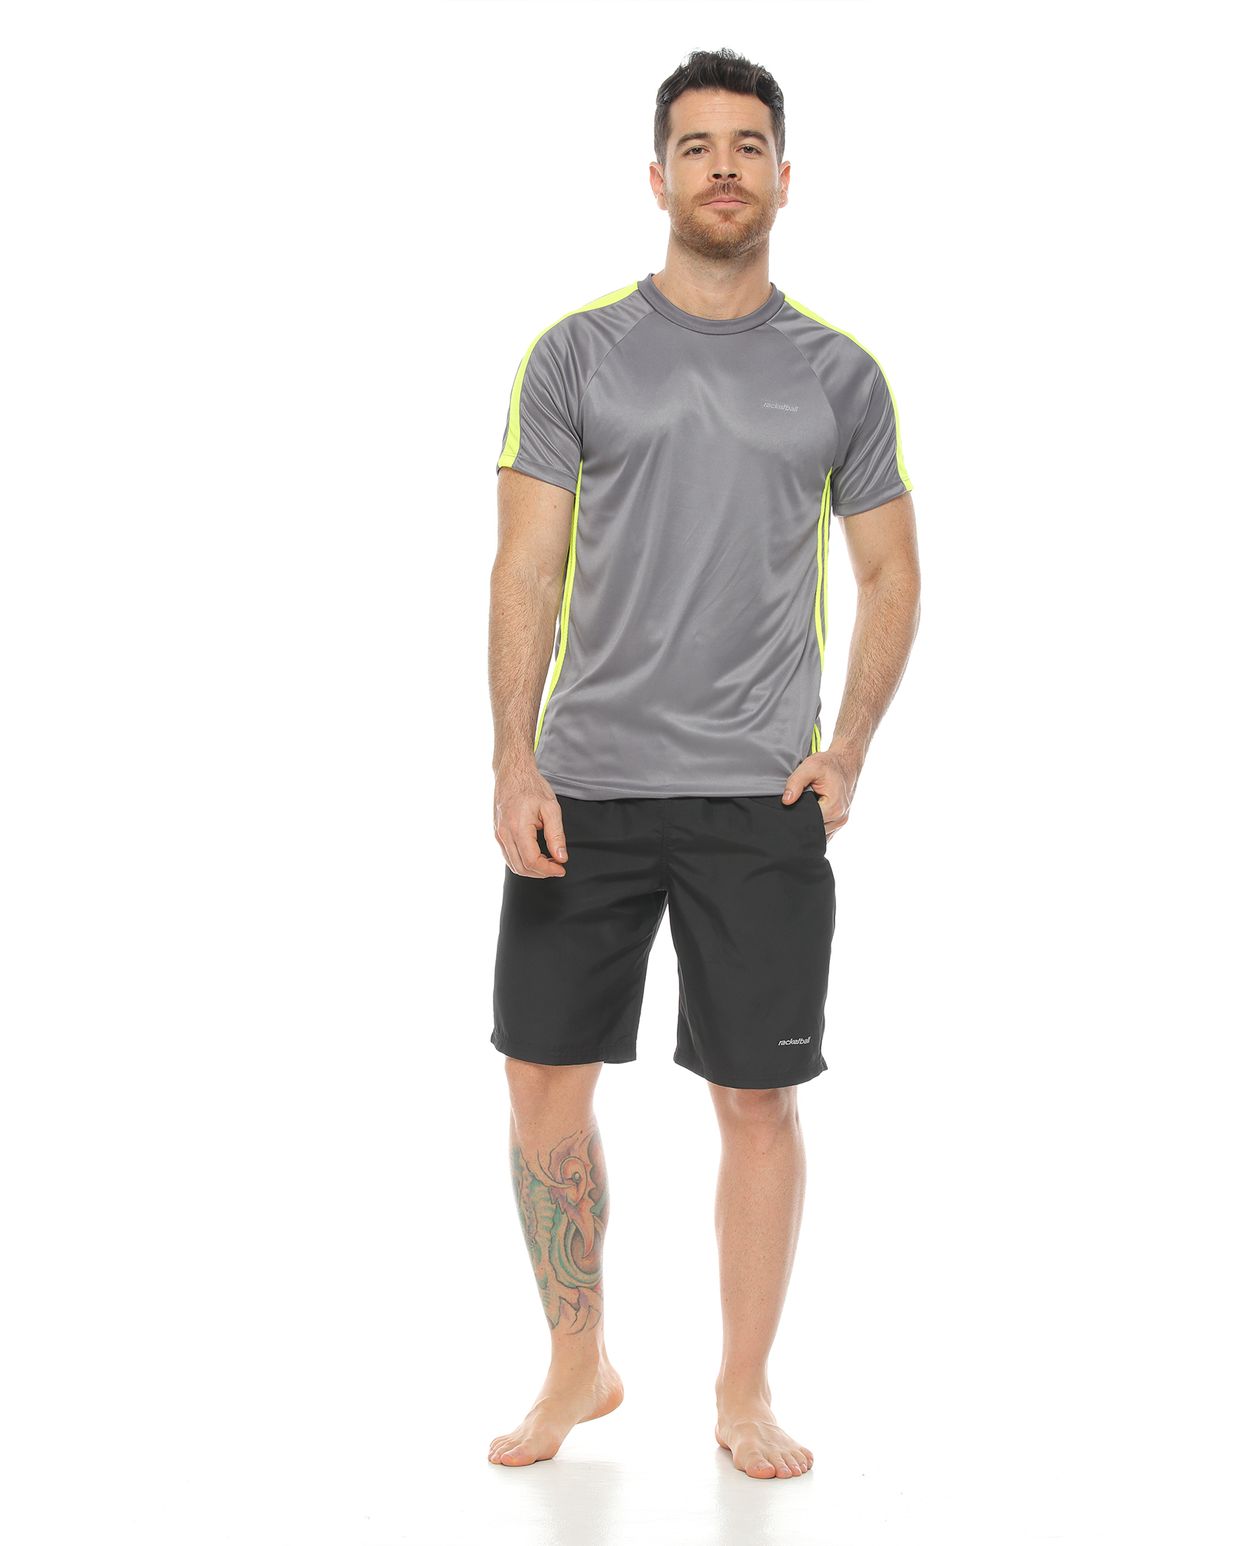 modelo con camiseta deportiva color gris y pantaloneta deportiva color negro para hombre cuerpo completo